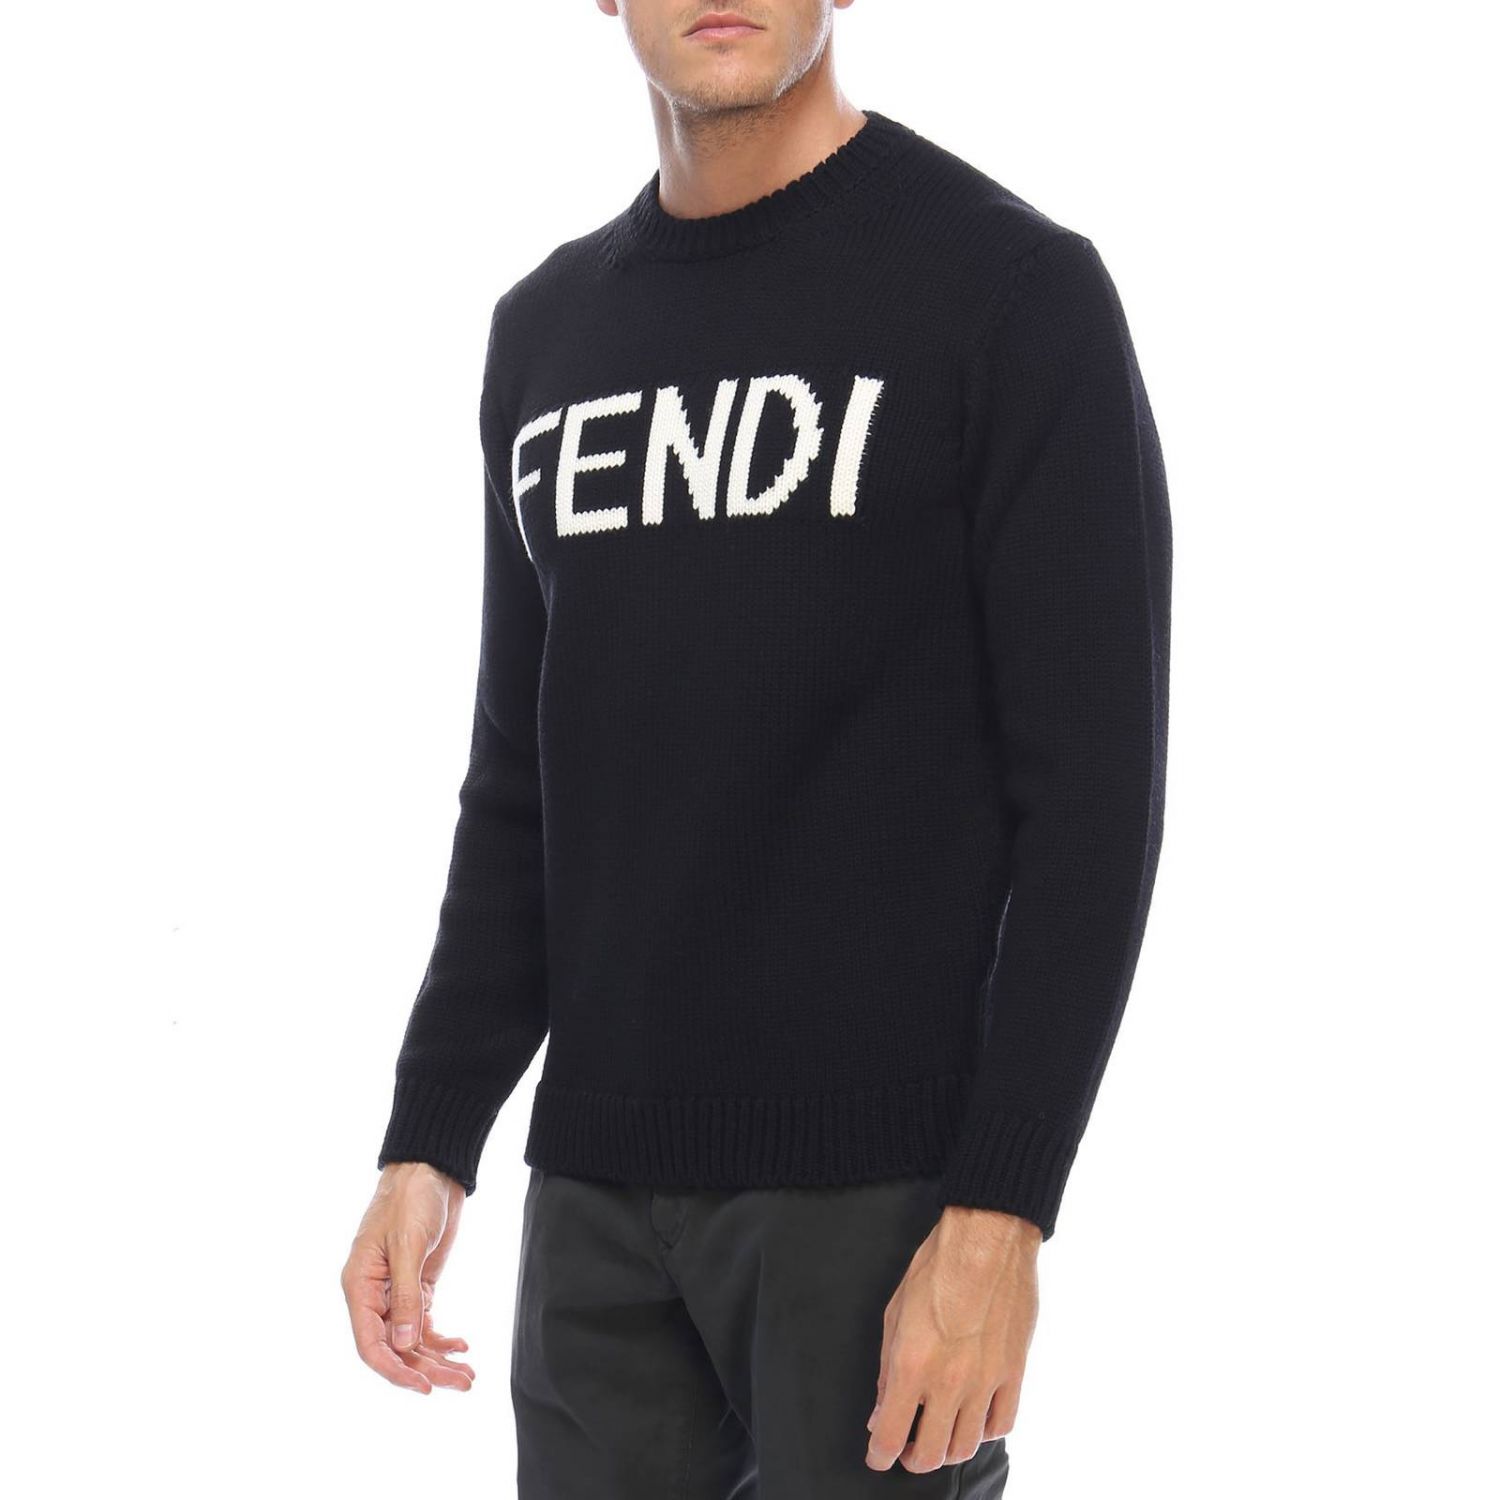 FENDI: Sweater men | Sweater Fendi Men Black | Sweater Fendi FZZ387 ...